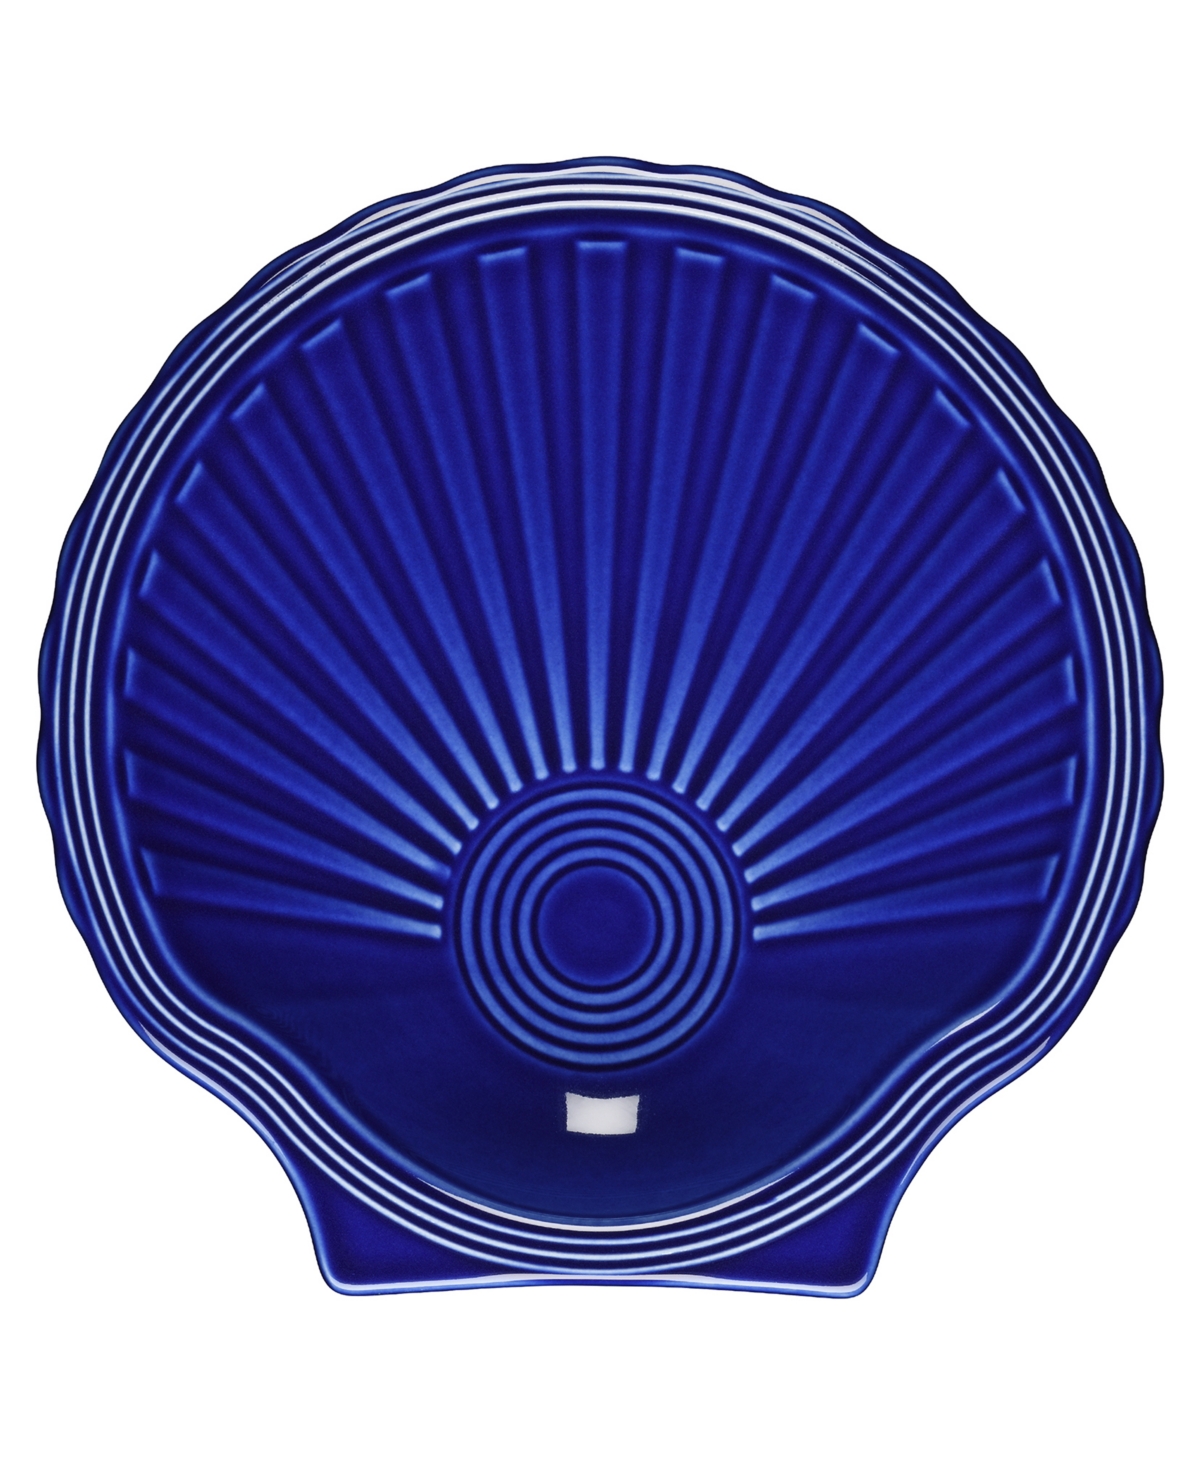 Coastal Shell-Shaped Plate - Twilight